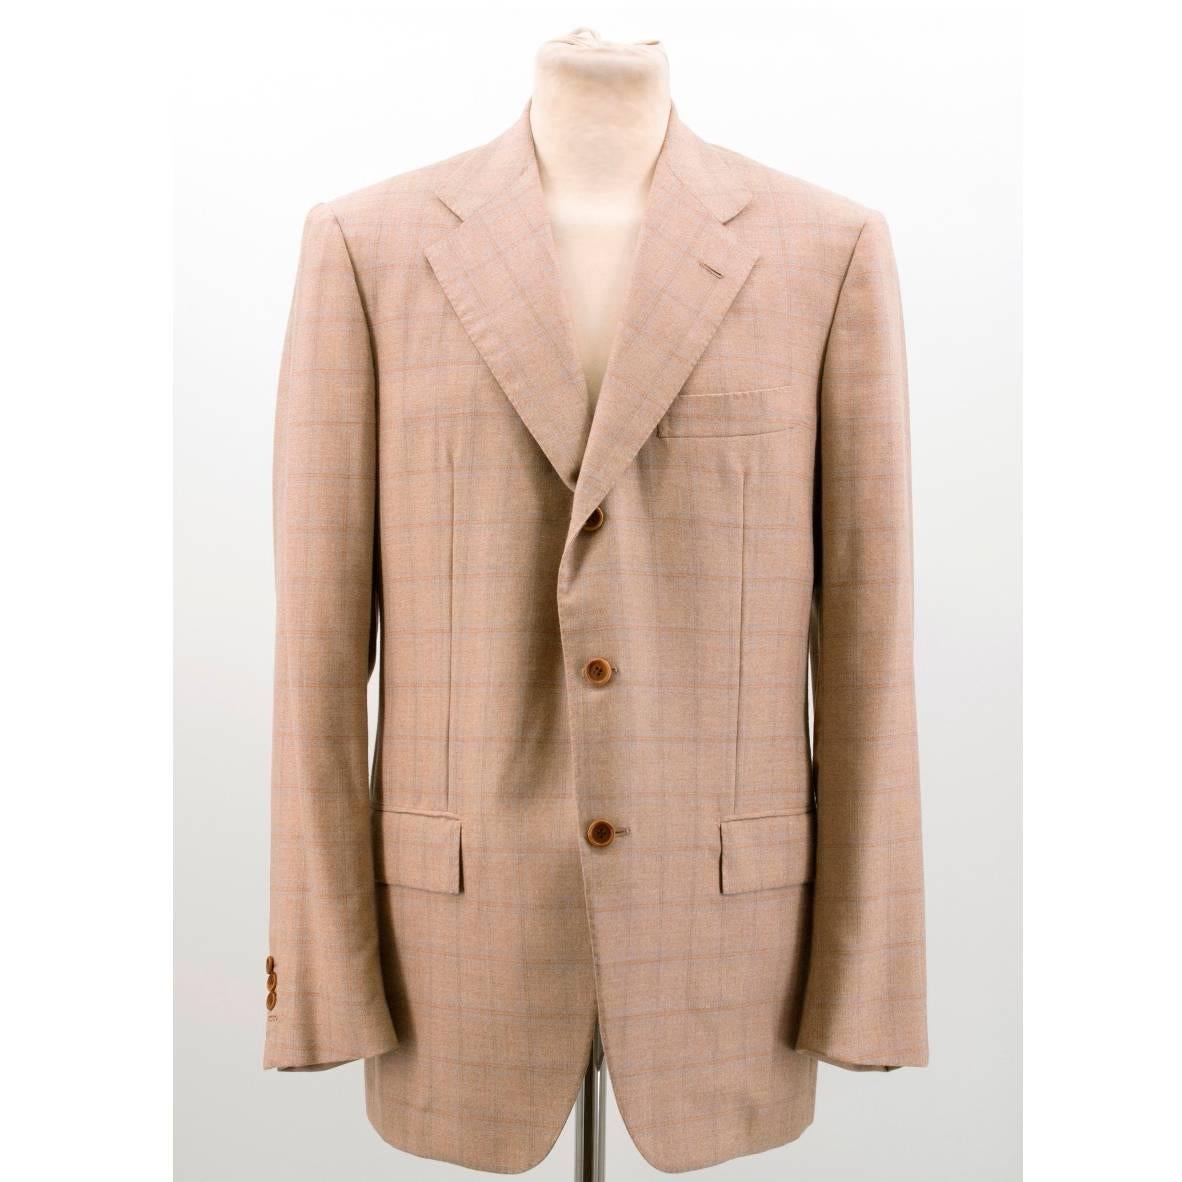 Kiton Men's Tan Cashmere Check Suit For Sale 4